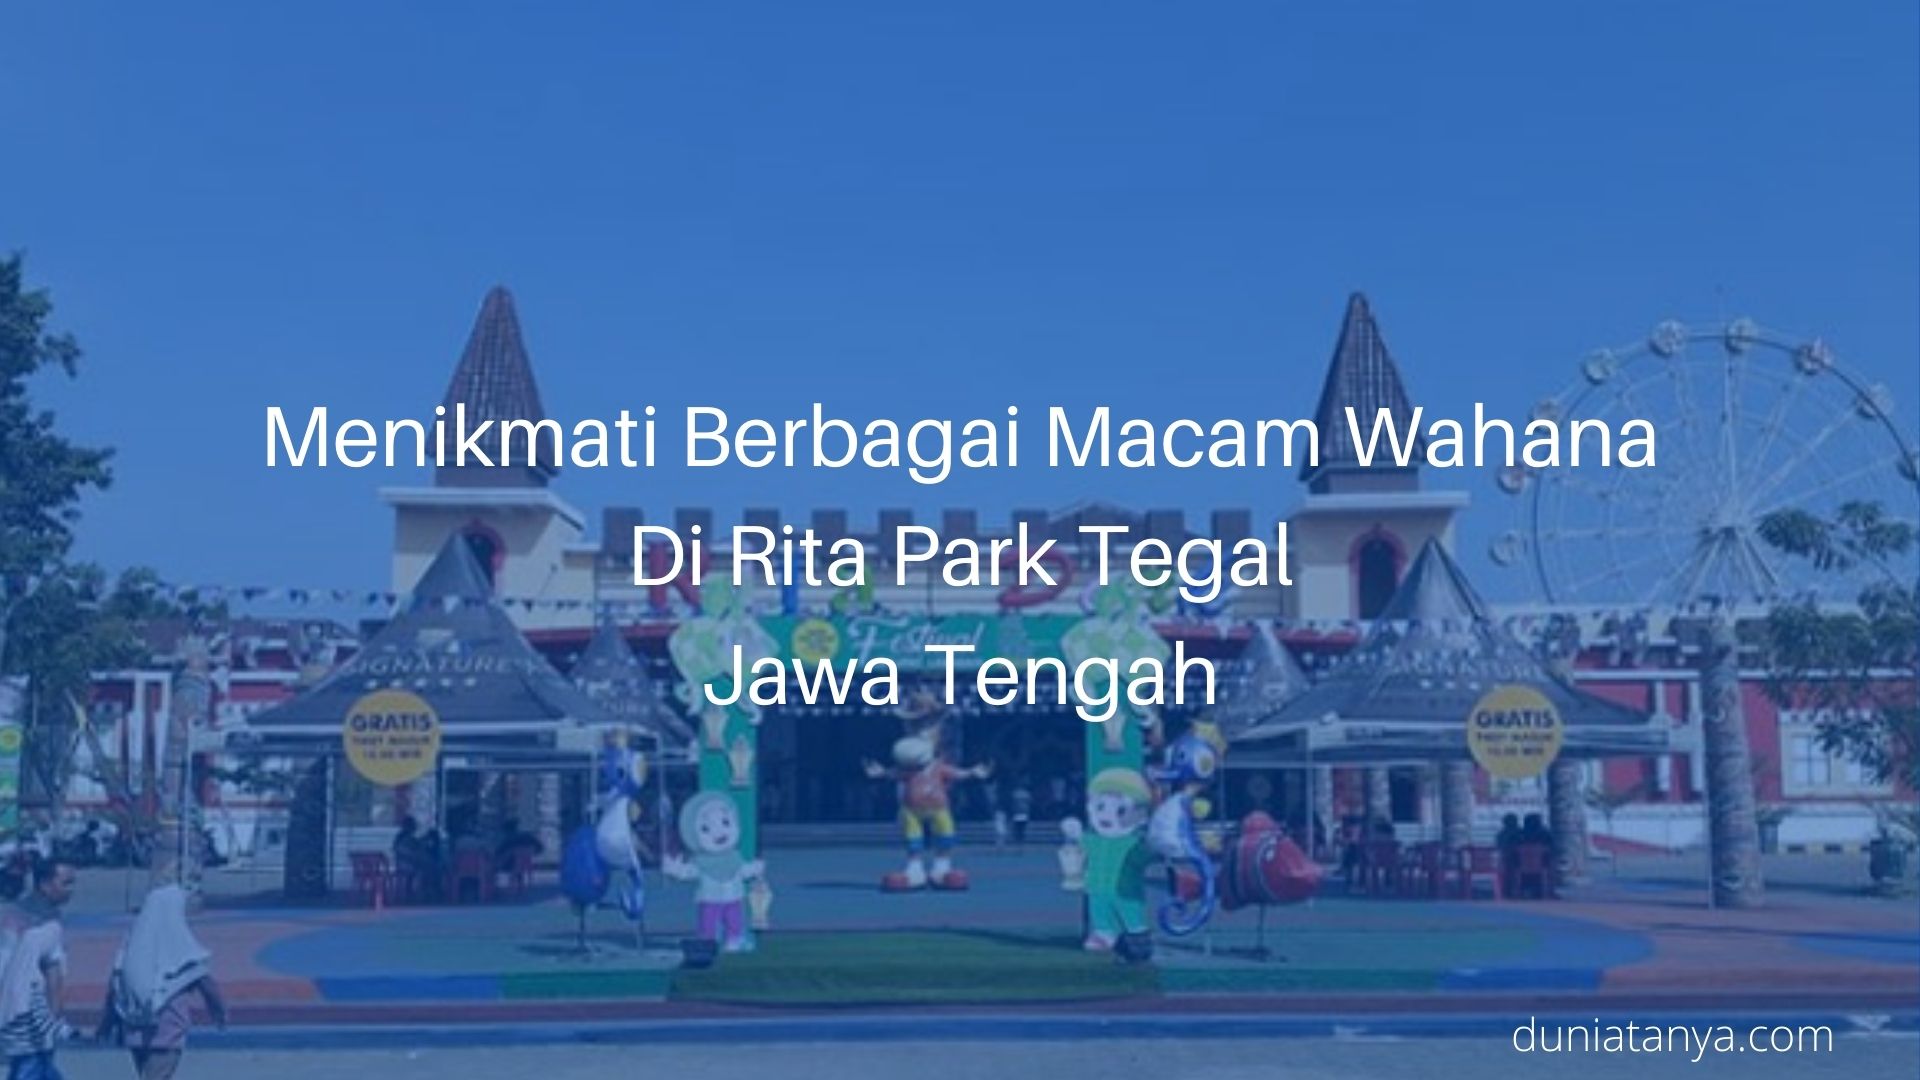 You are currently viewing Menikmati Berbagai Macam Wahana Di Rita Park Tegal Jawa Tengah